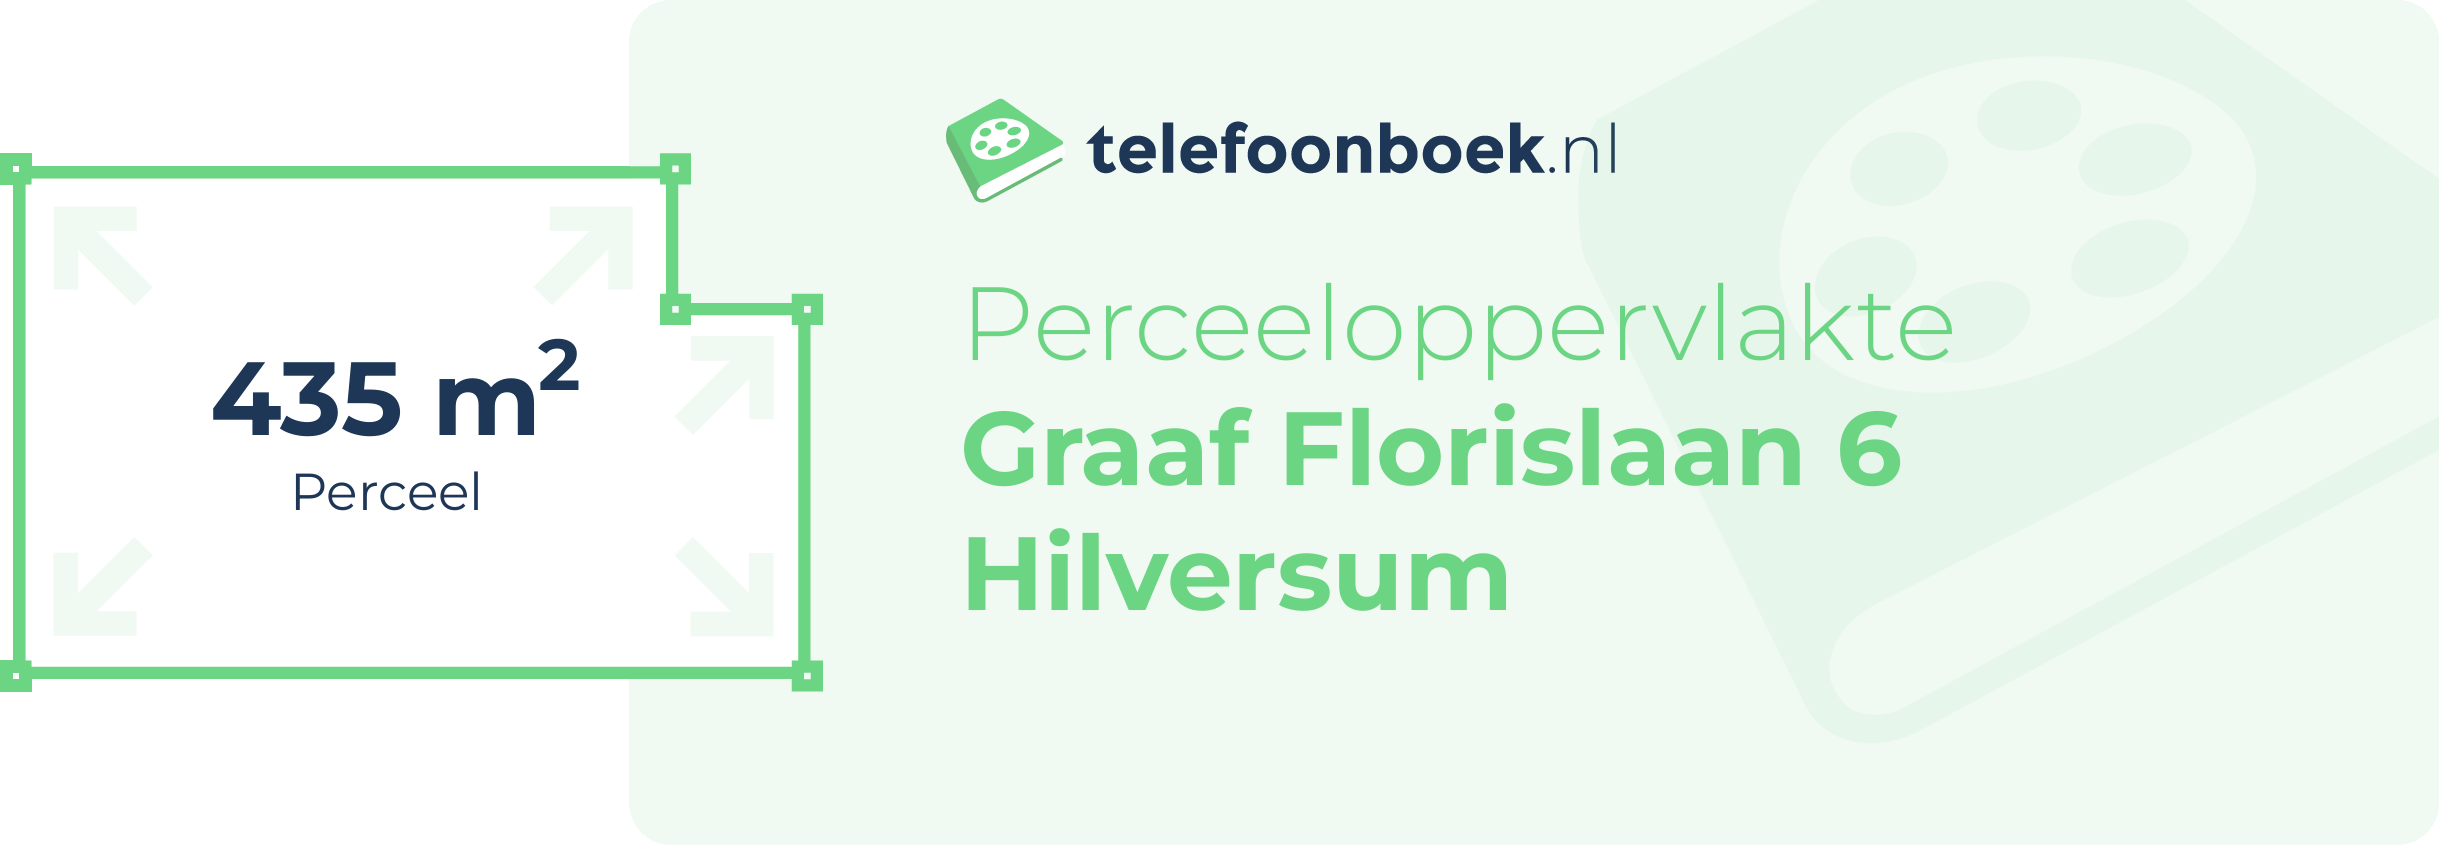 Perceeloppervlakte Graaf Florislaan 6 Hilversum